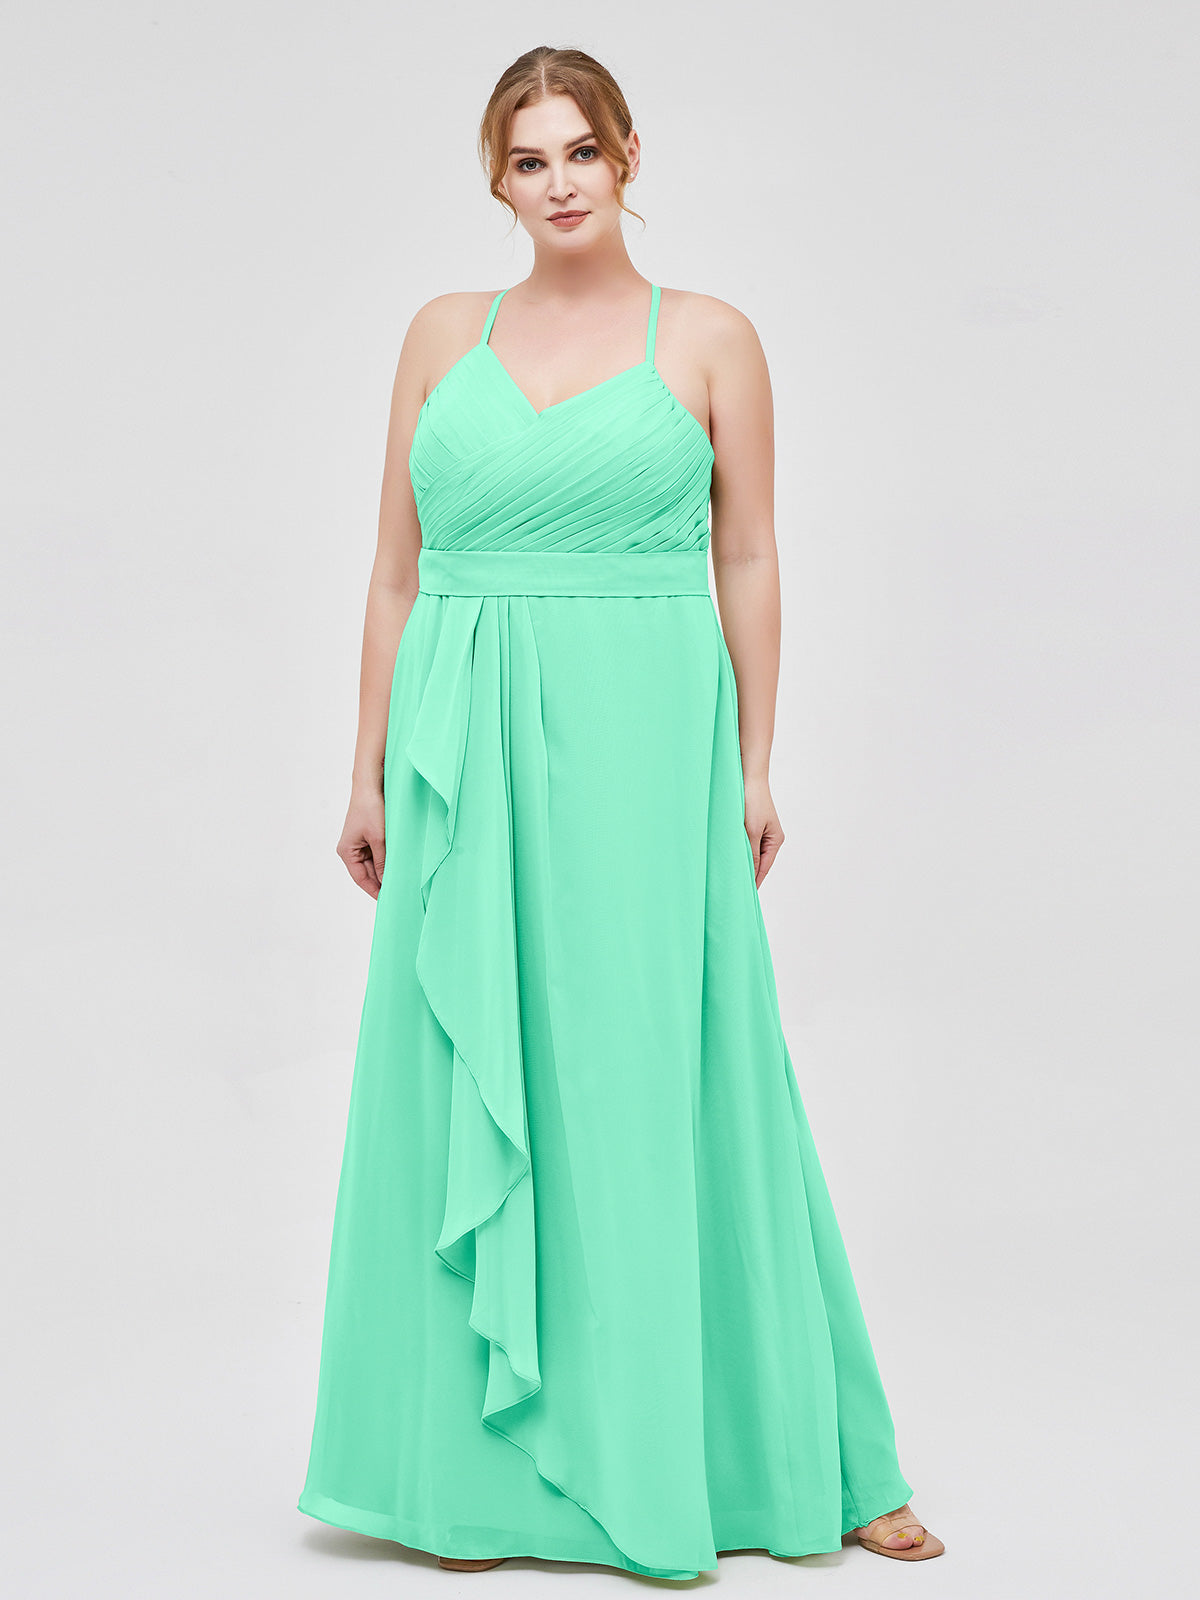 Turquoise Formal Dresses Plus Size Shop | bellvalefarms.com